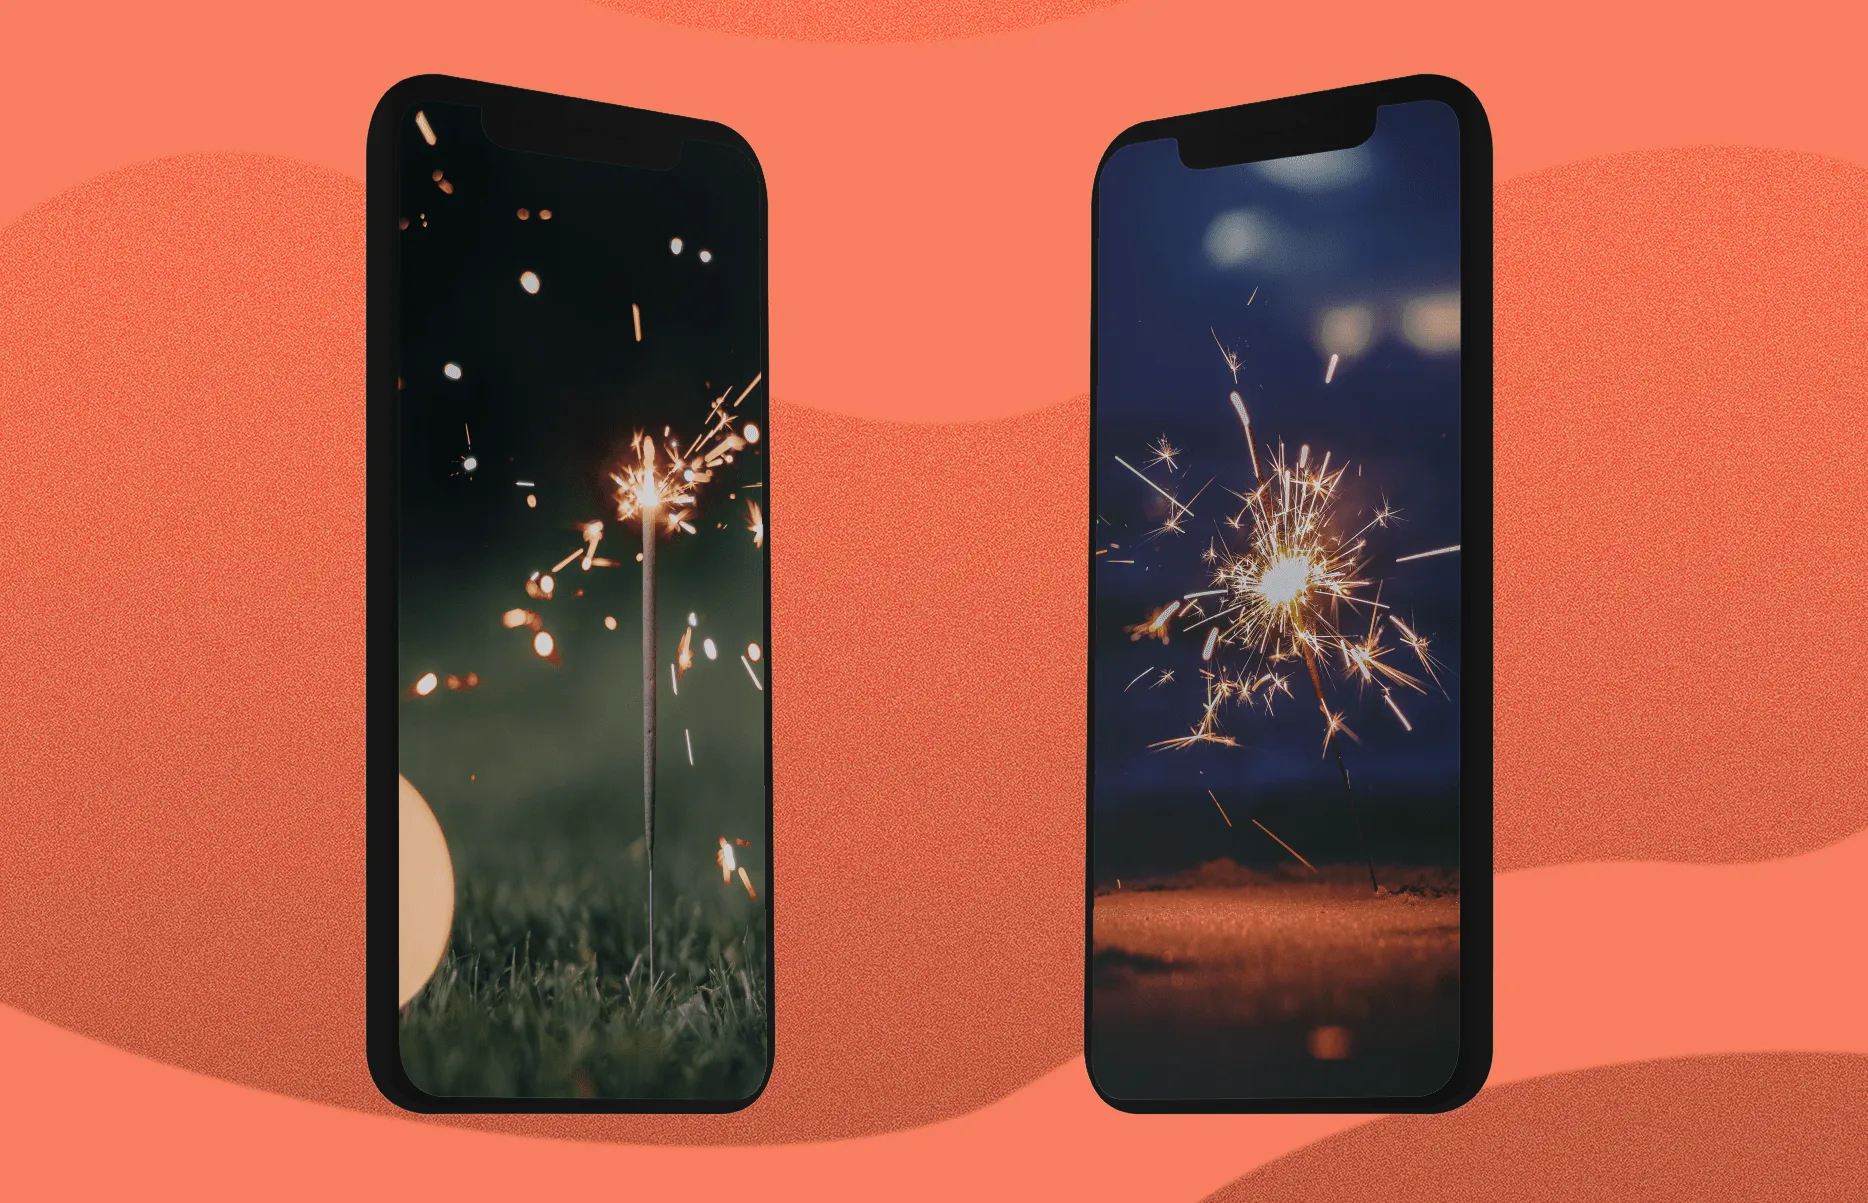 Hình nền đẹp chất lượng cao cho iPhone chủ đề pháo hoa và bokeh